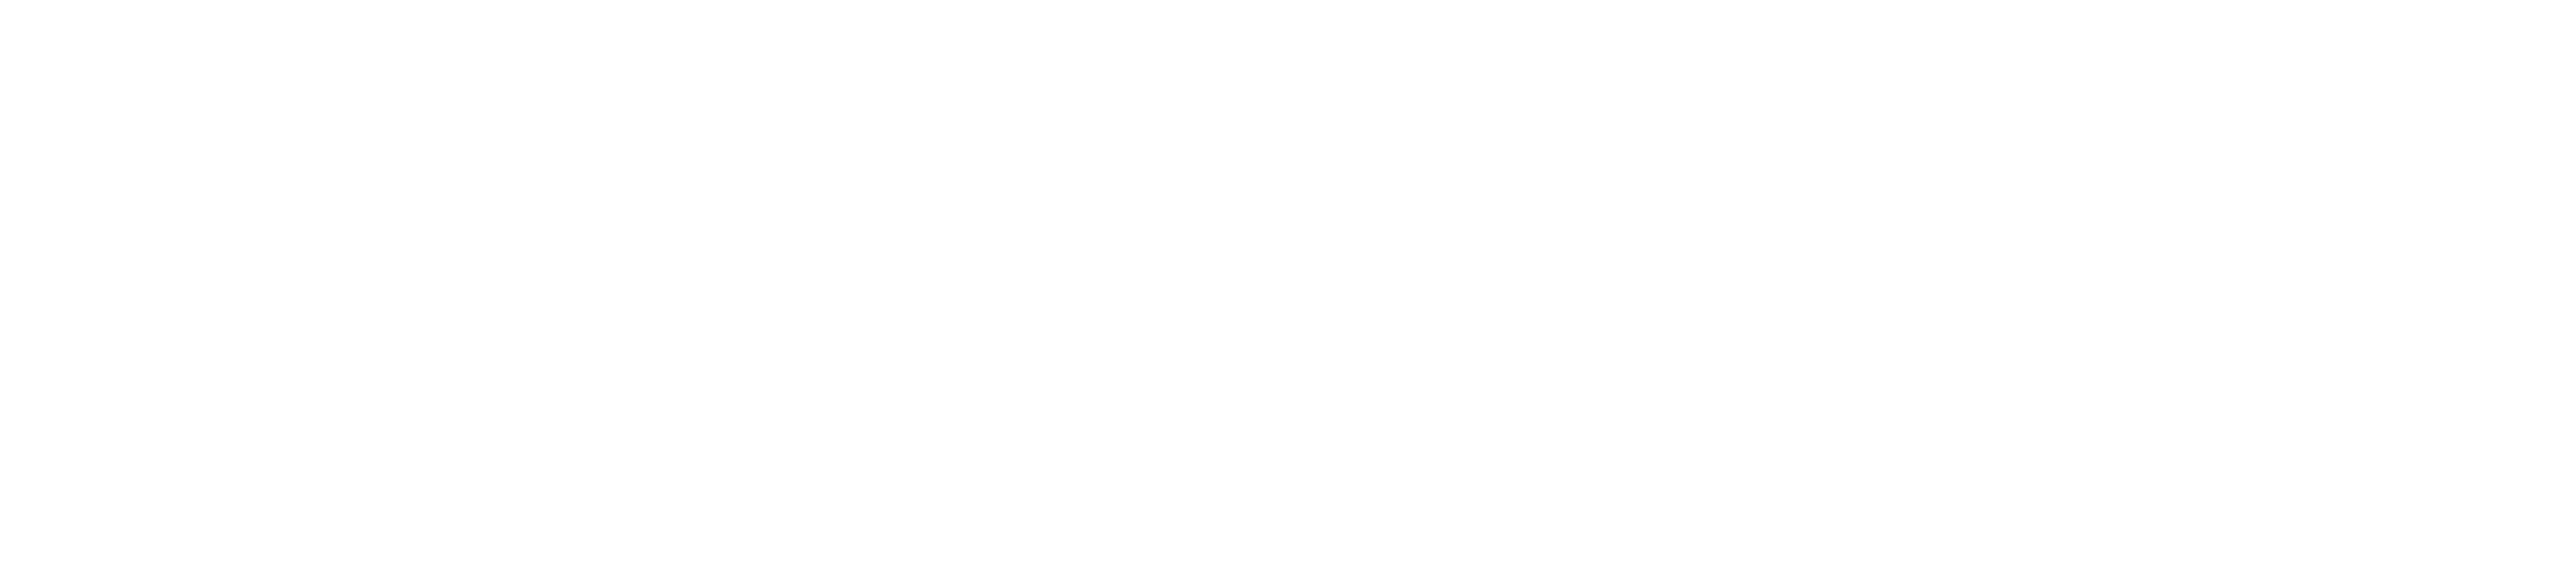 SCK CEN logo white